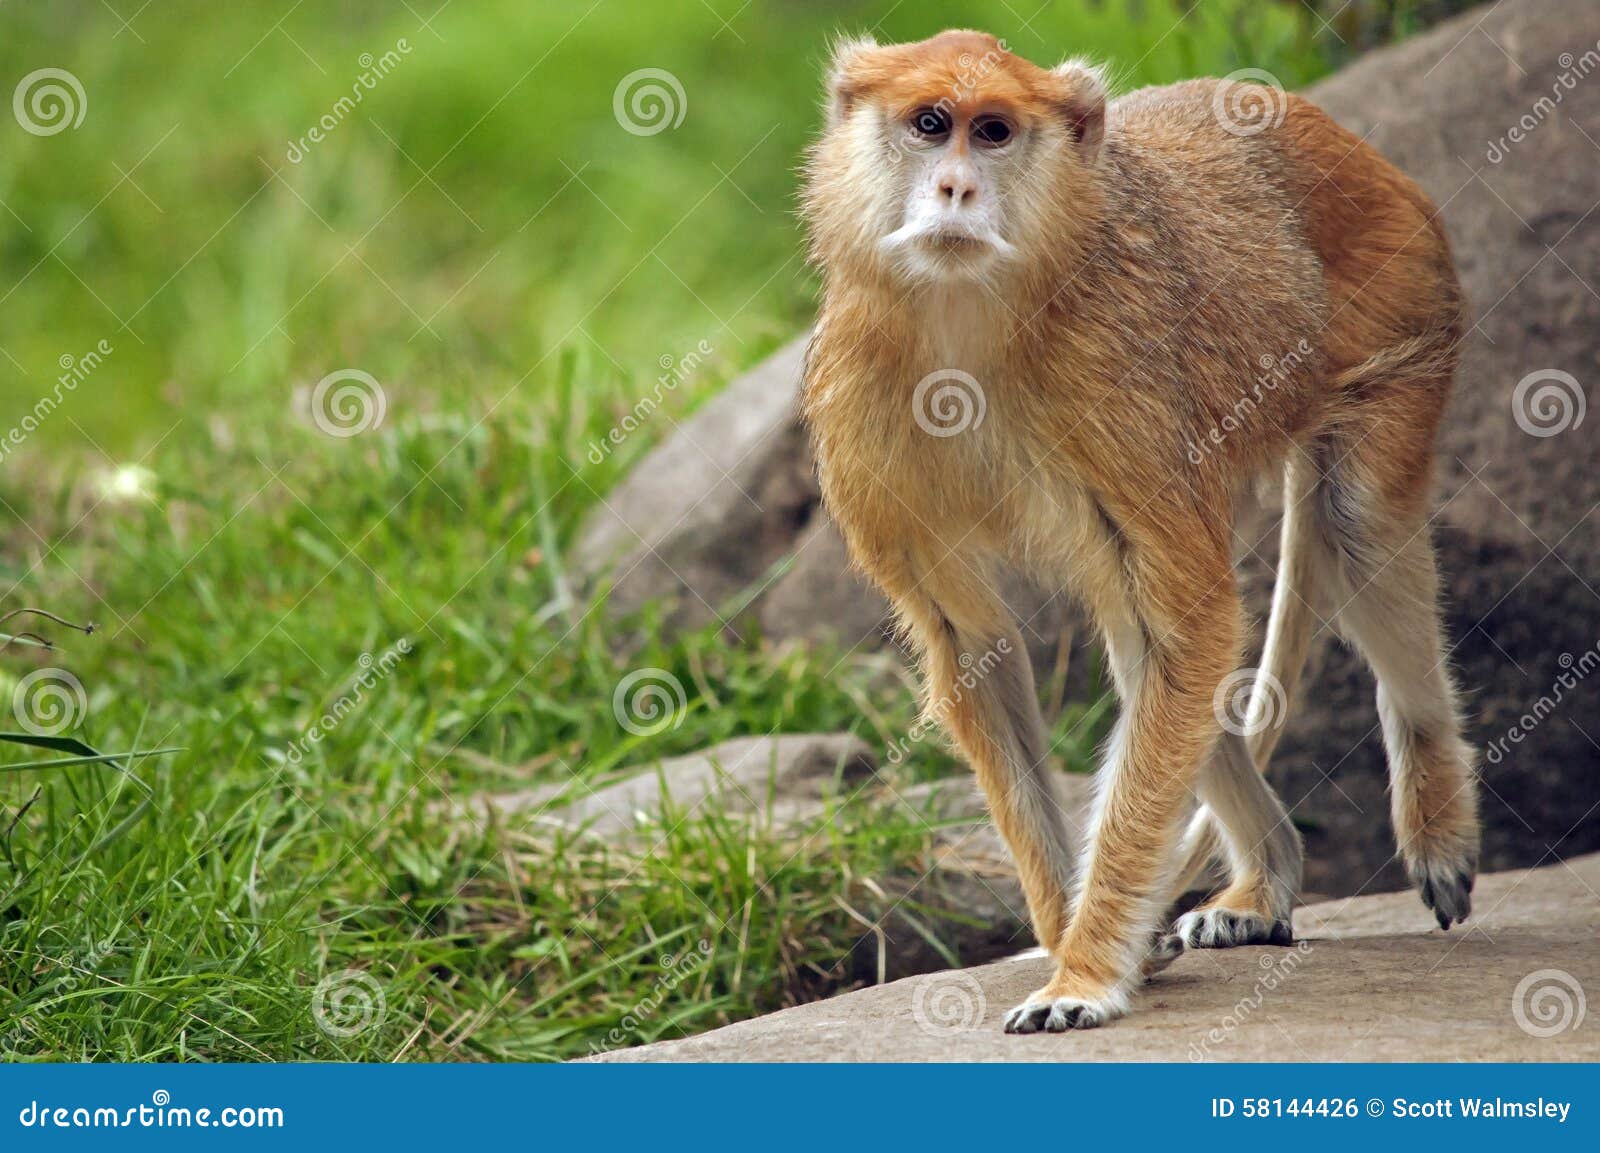 patas monkey walking